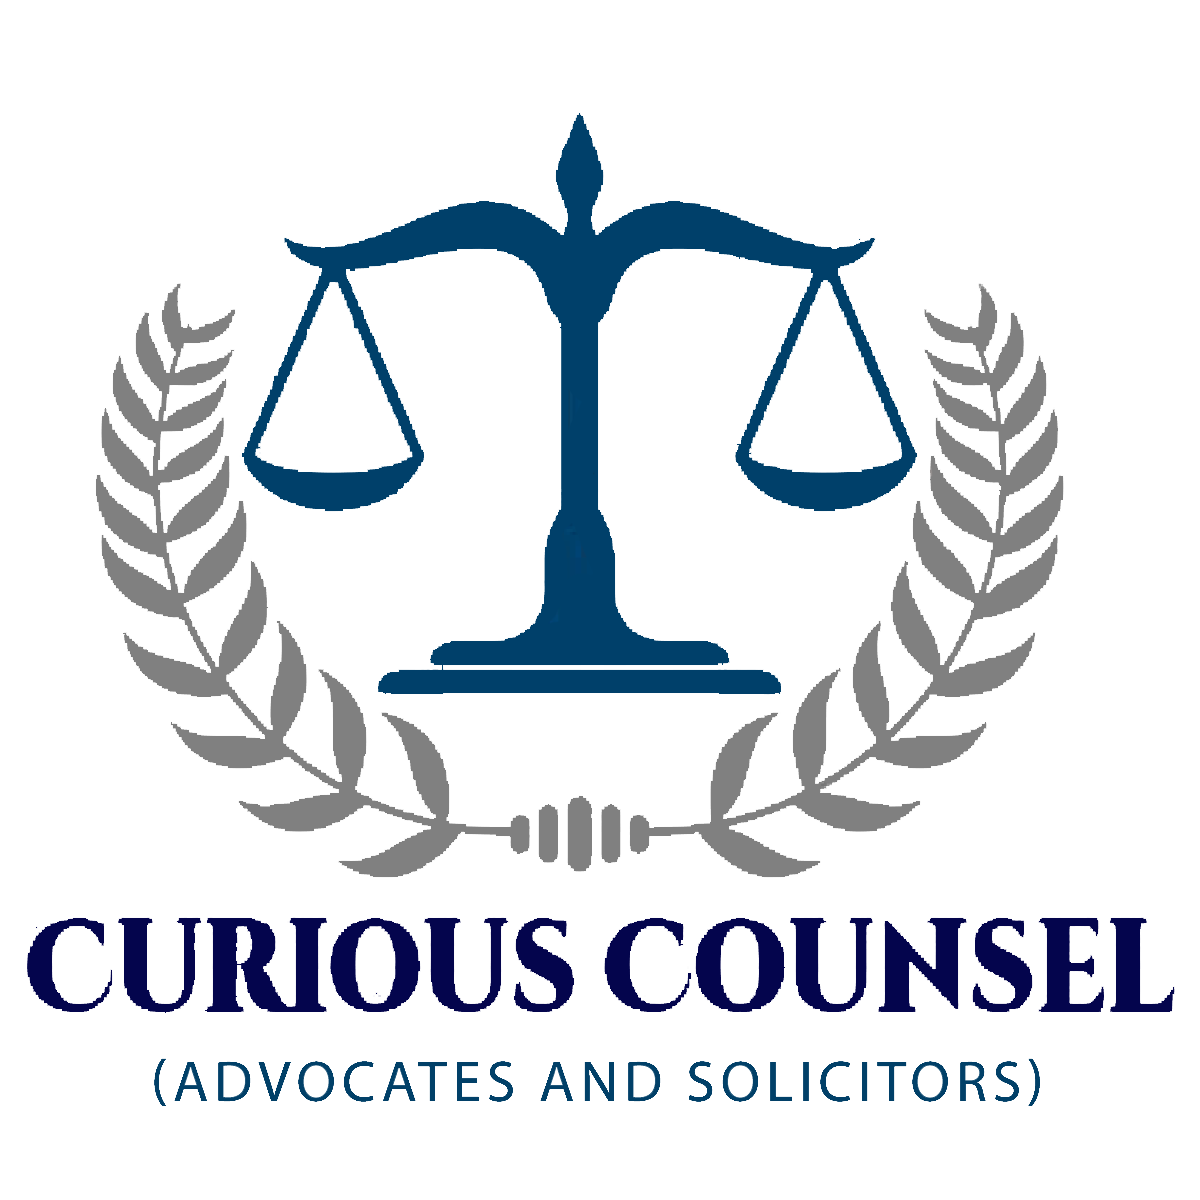 Curious Counsel Logo